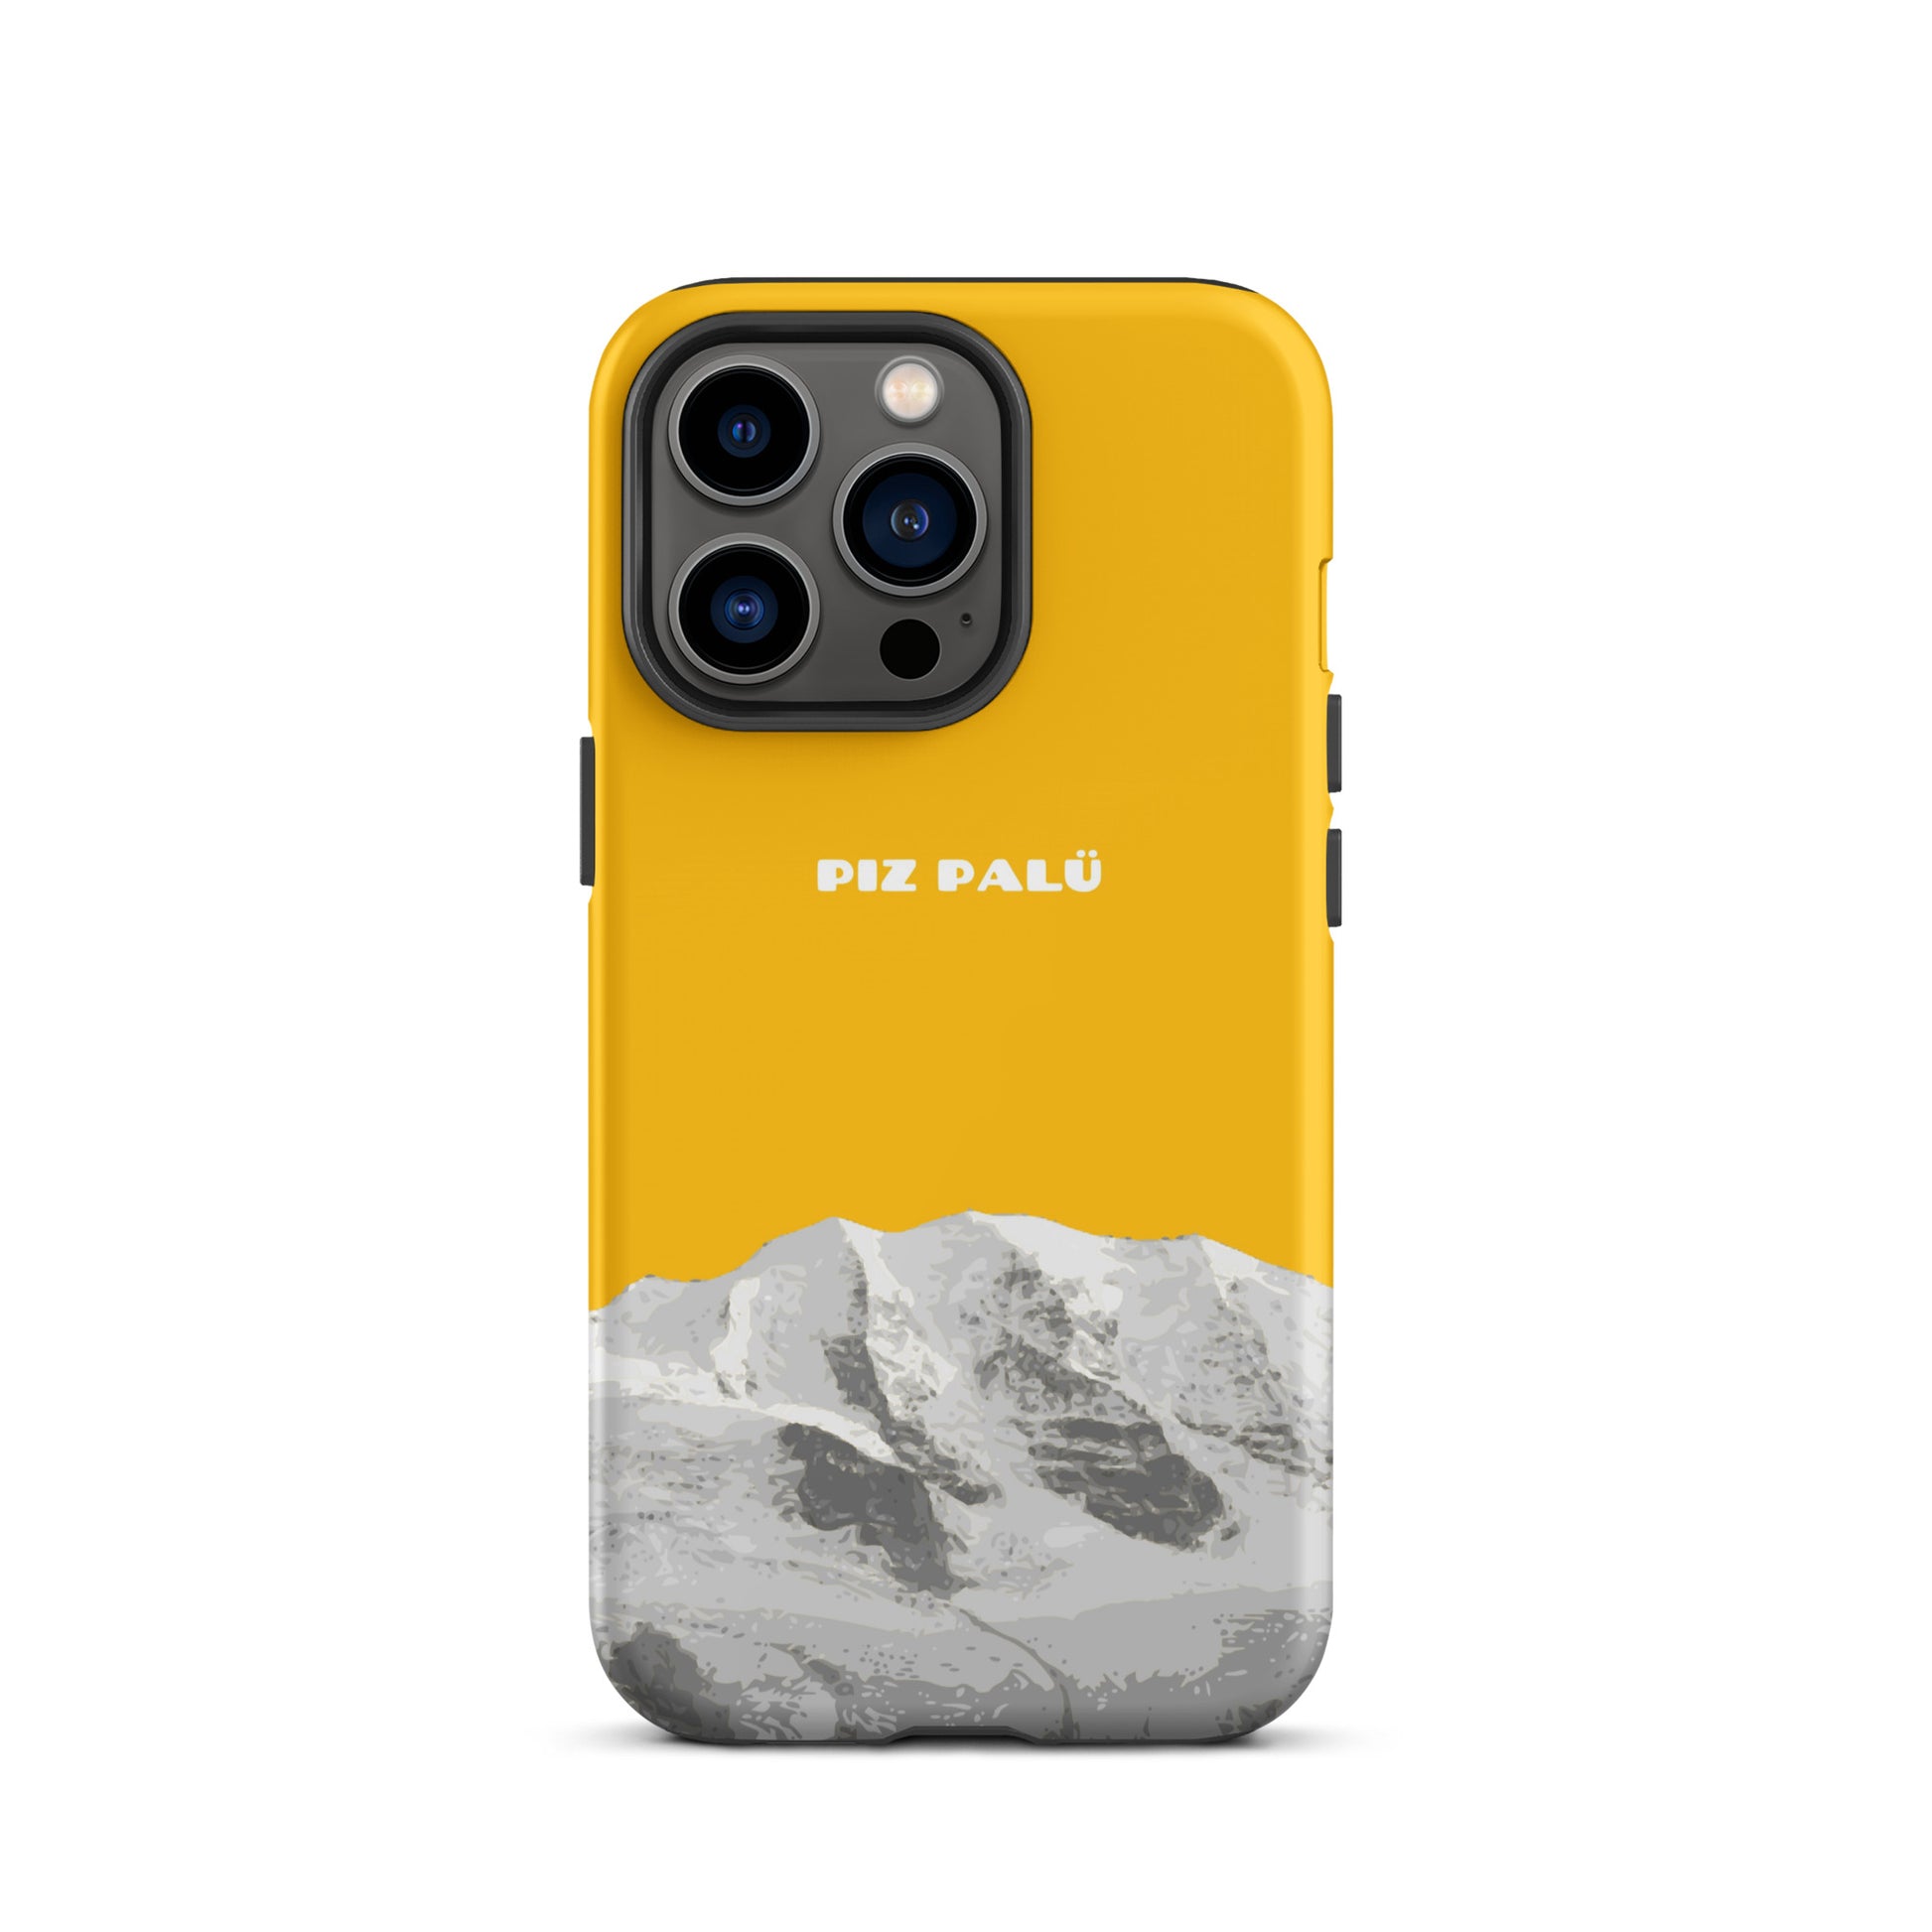 Hülle für das iPhone 13 Pro von Apple in der Farbe Goldgelb, dass den Piz Palü in Graubünden zeigt.